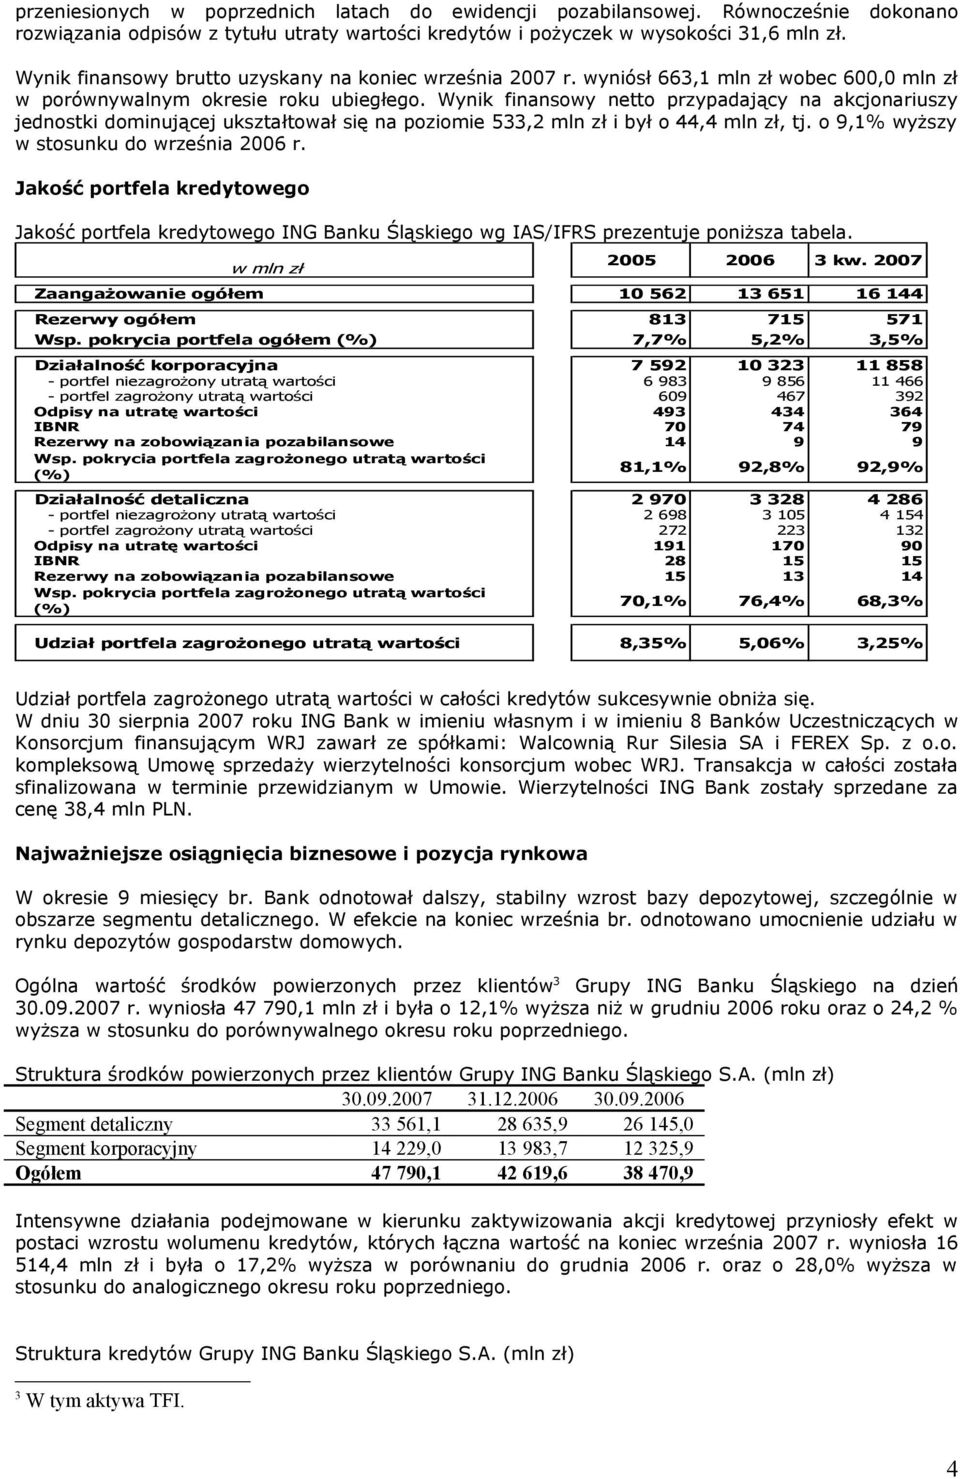 Wynik finansowy netto przypadający na akcjonariuszy jednostki dominującej ukształtował się na poziomie 533,2 mln zł i był o 44,4 mln zł, tj. o 9,1% wyższy w stosunku do września 2006 r.